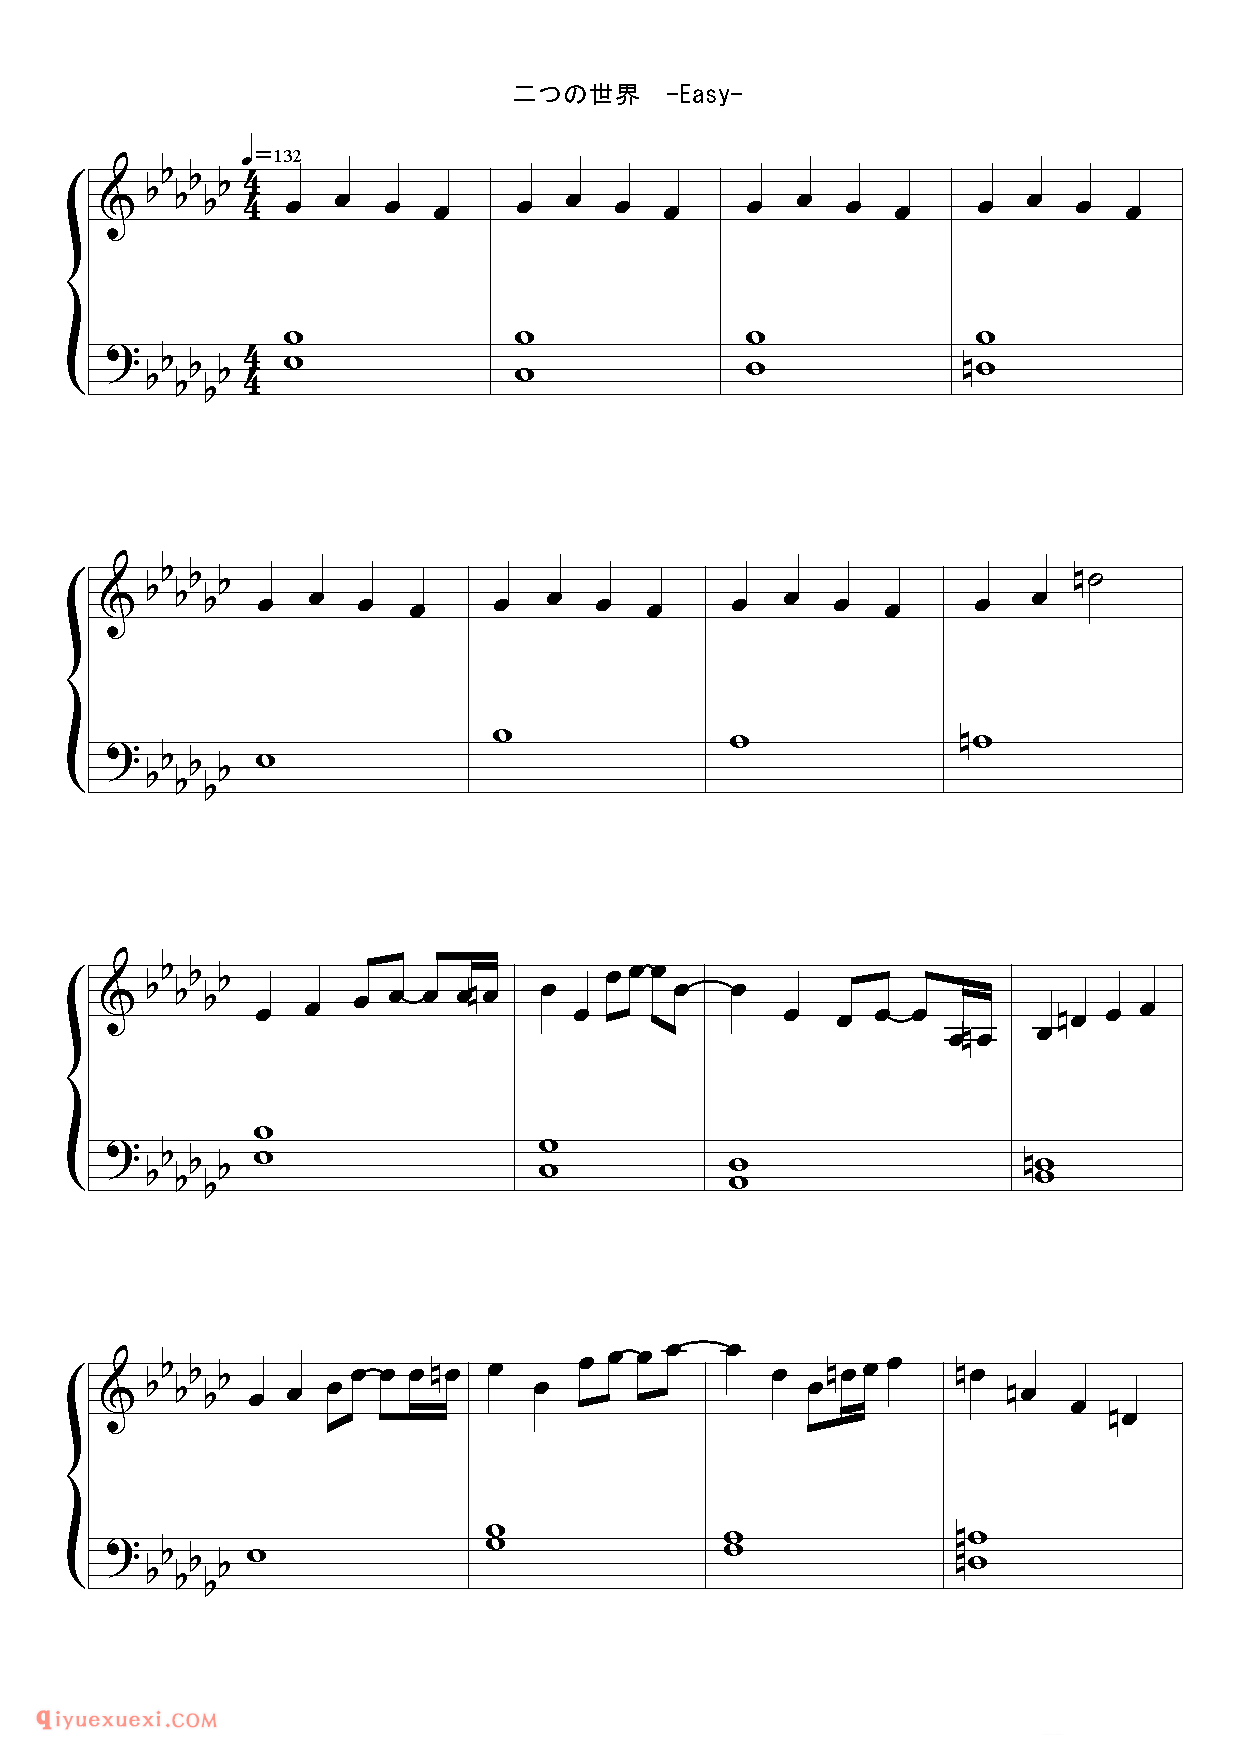 [東方ピアノEasyモード楽譜][easy][4]二つの世界_东方(project)钢琴谱